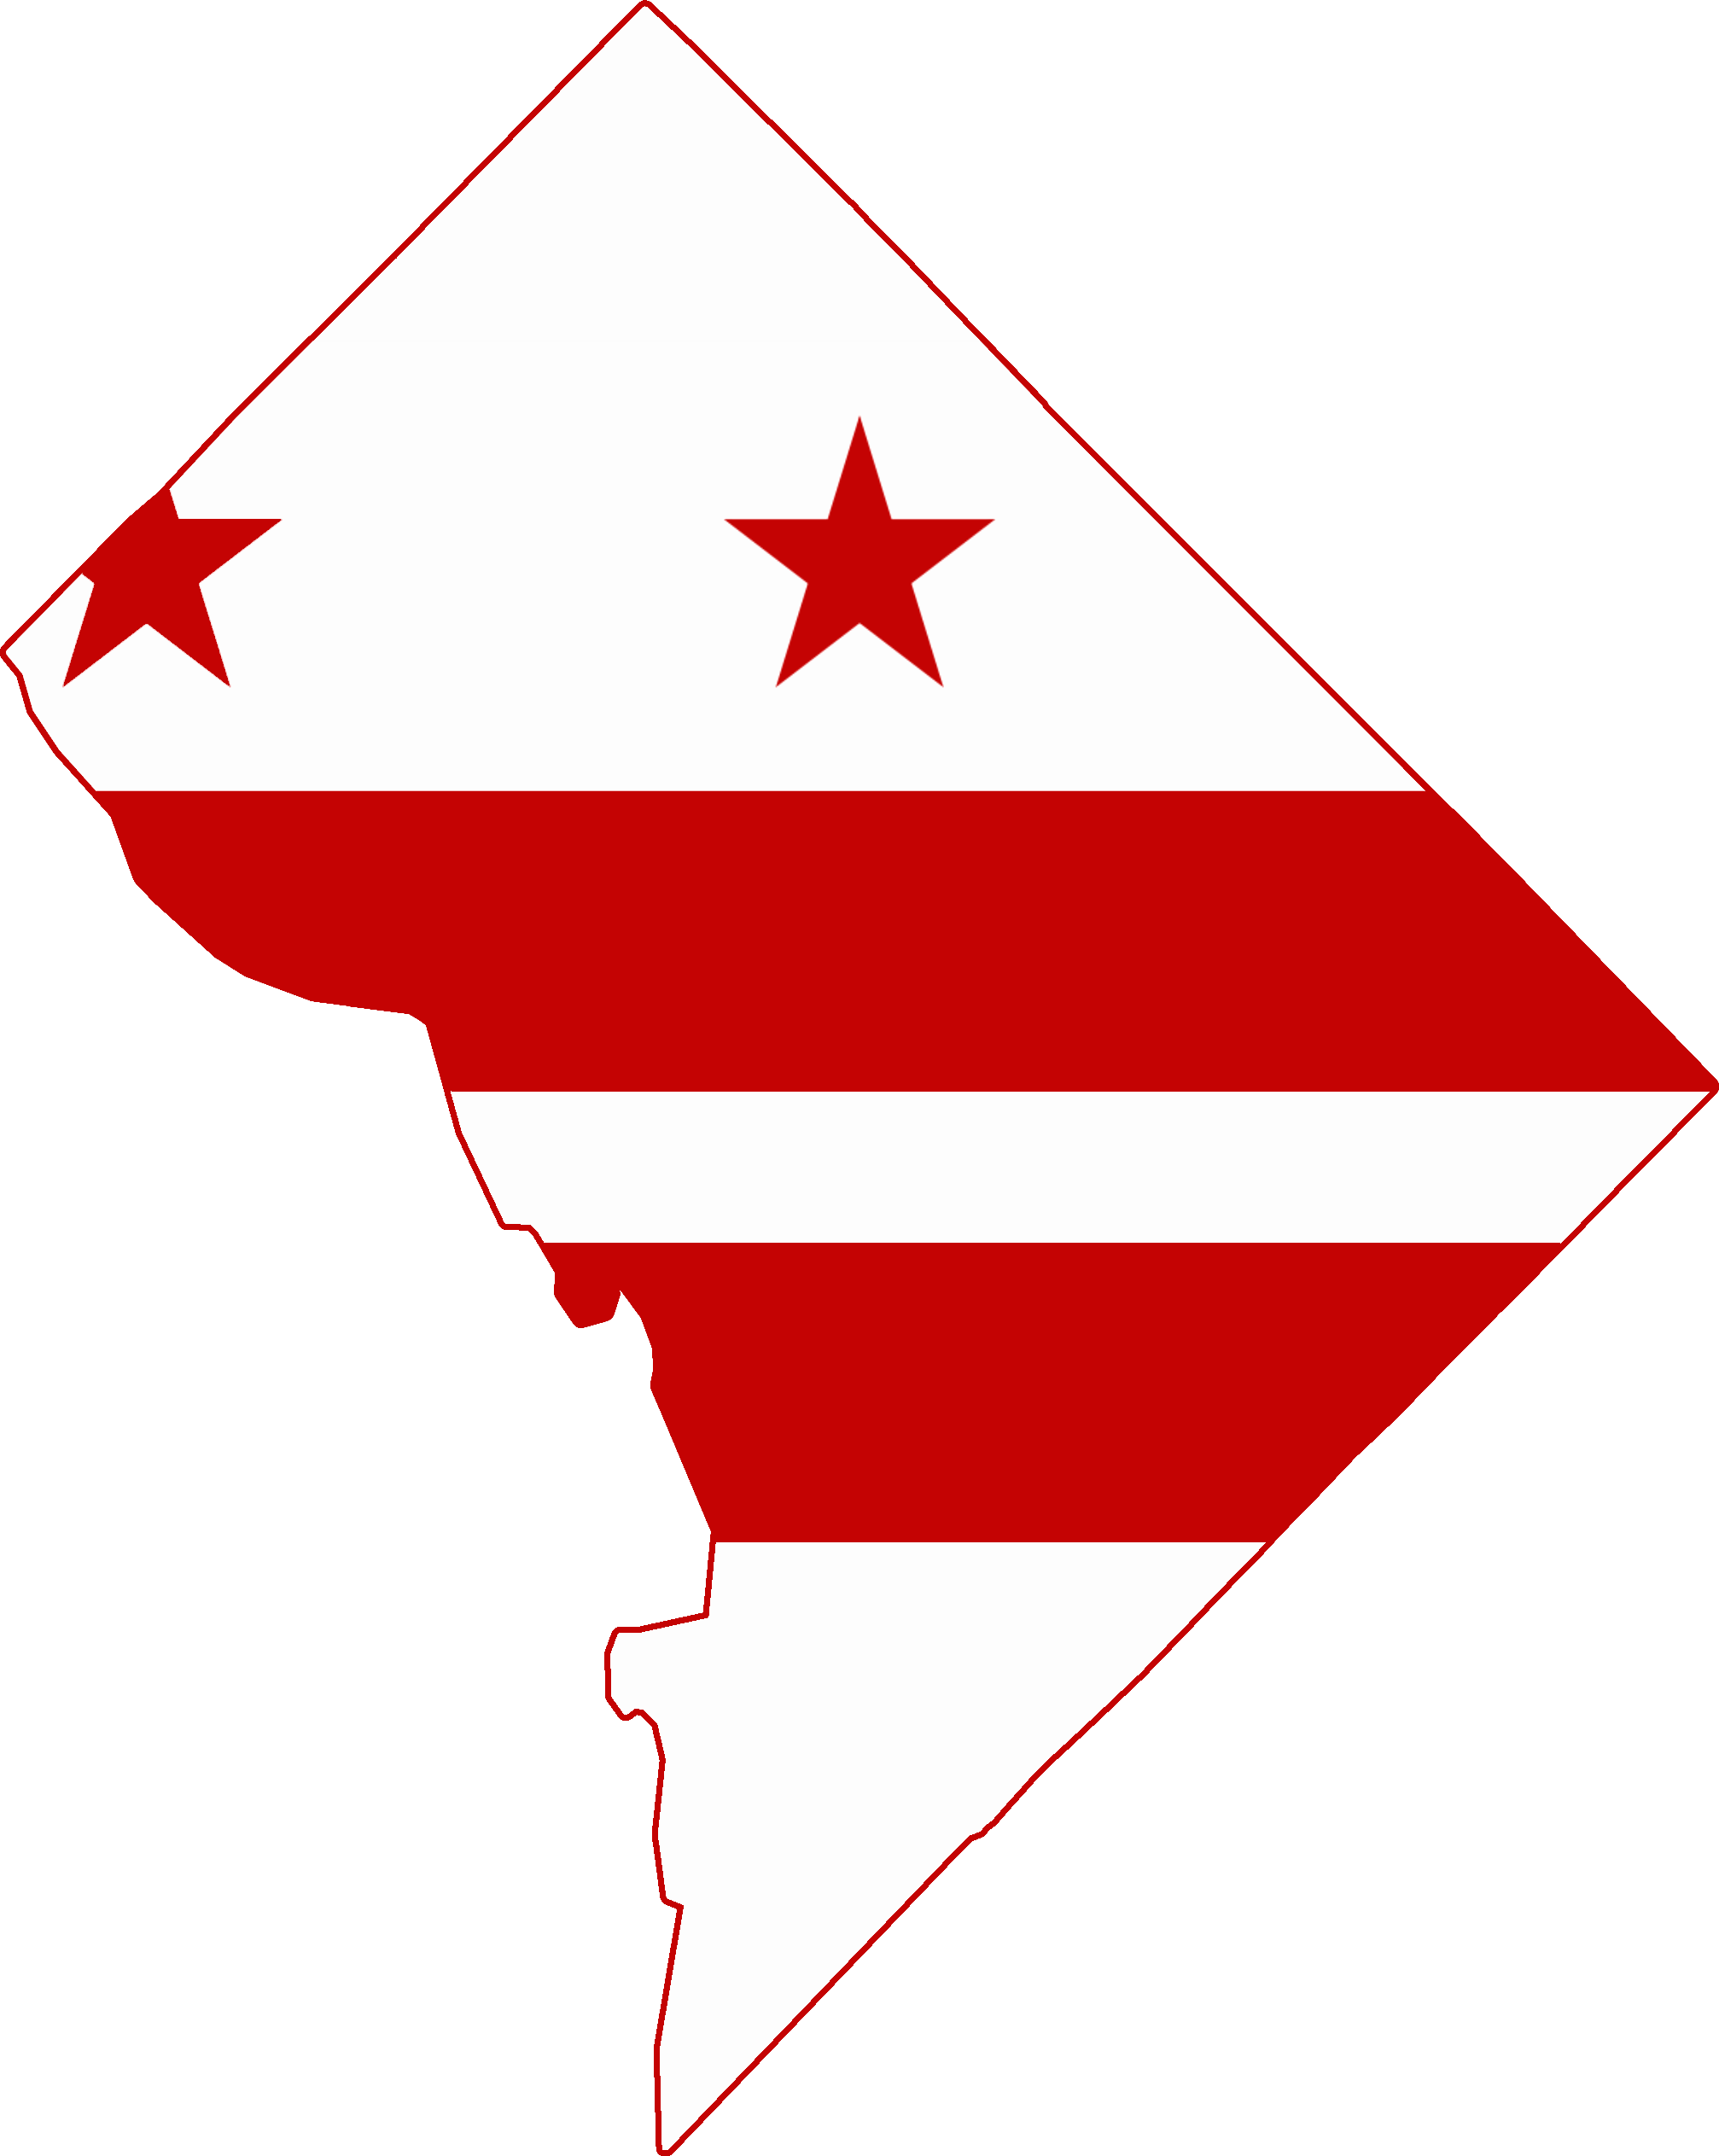 Washington DC Logo - File:Flag map of Washington DC.png - Wikimedia Commons